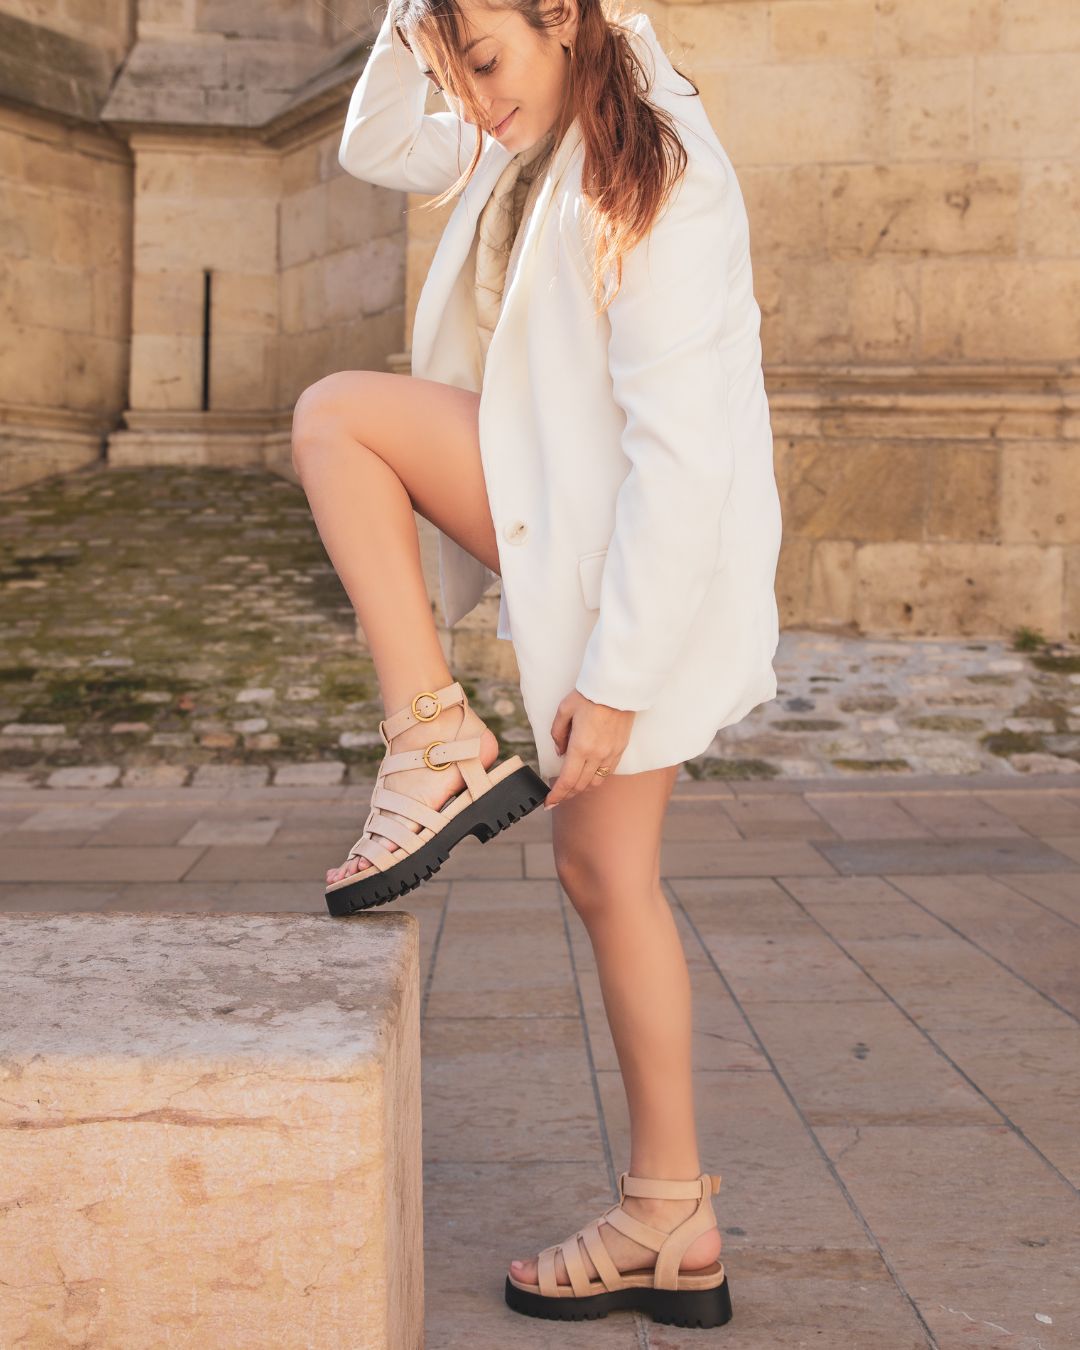 Sandale femme plateforme confort beige - Olga - Casualmode.fr